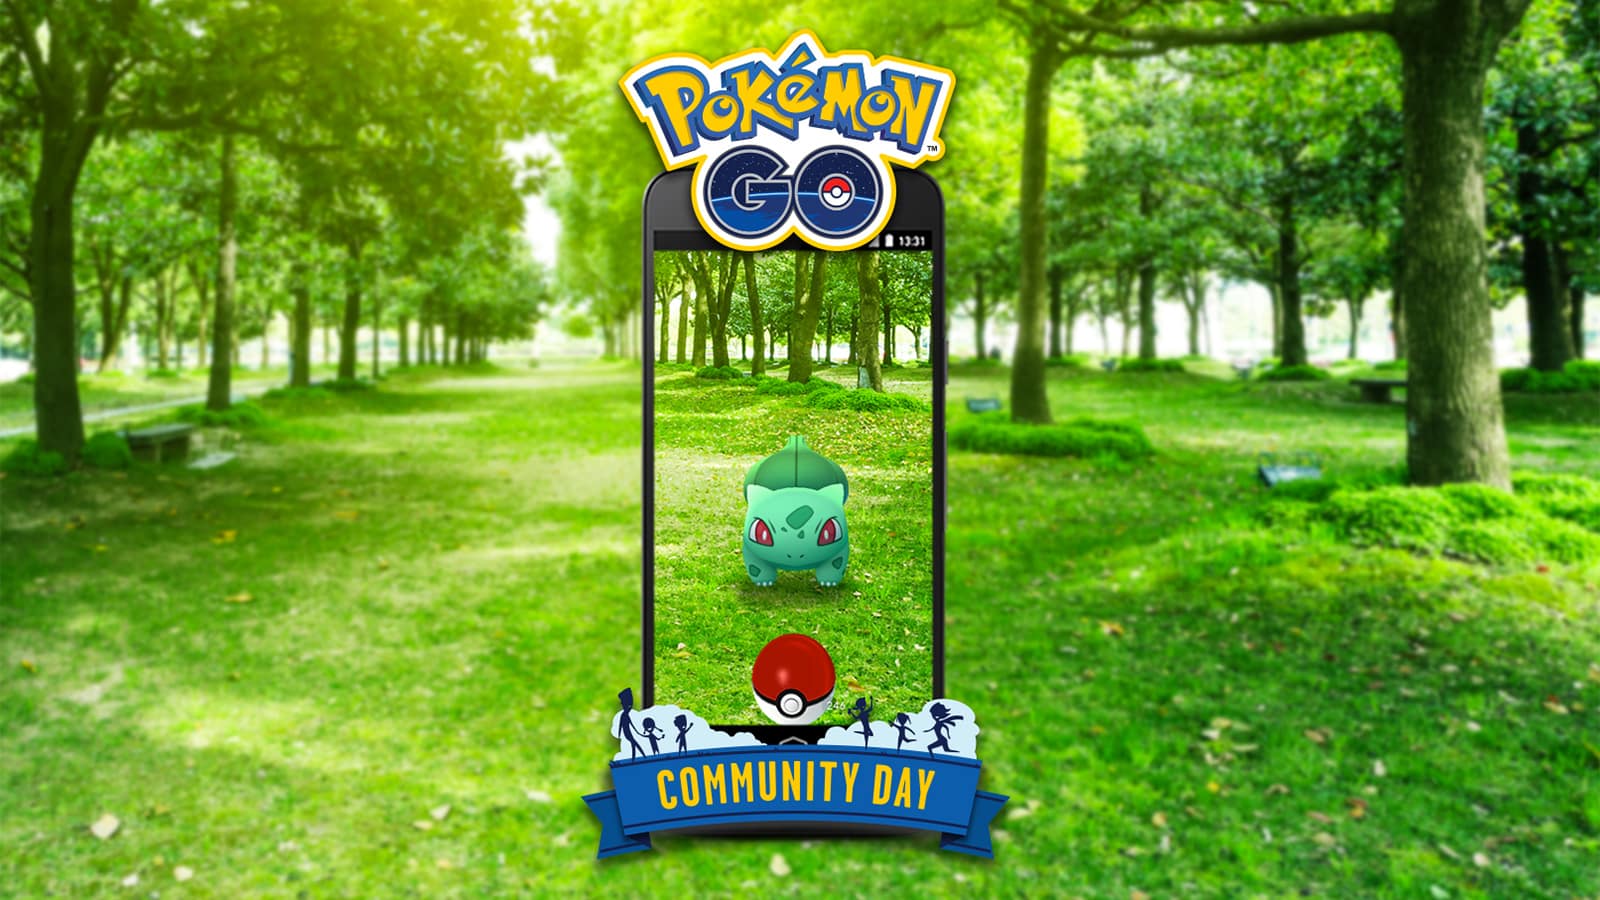 Pokemon GO - Shiny Bulbasaur spawning for community day